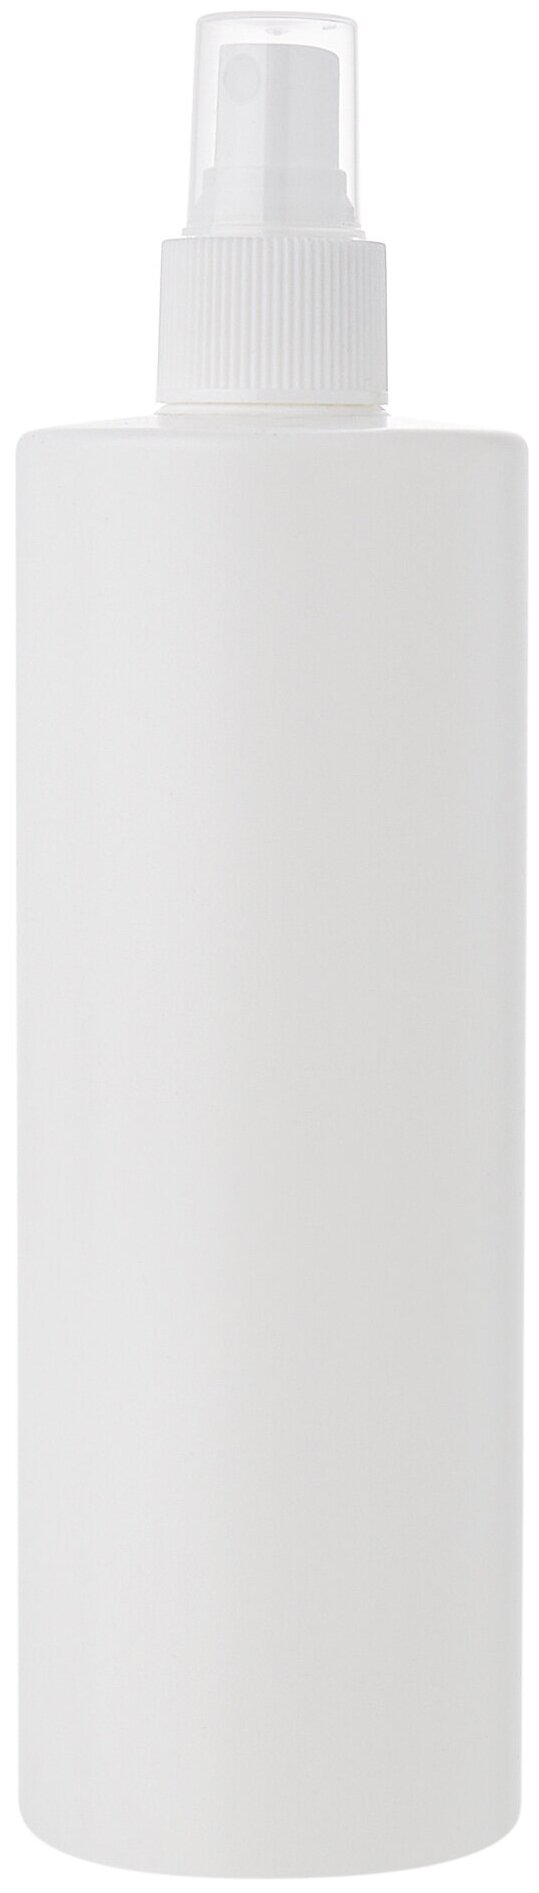 Флакон 400 мл прямоугольный белый с кнопочным распылителем для антисептика, духов, лосьона, 4 шт